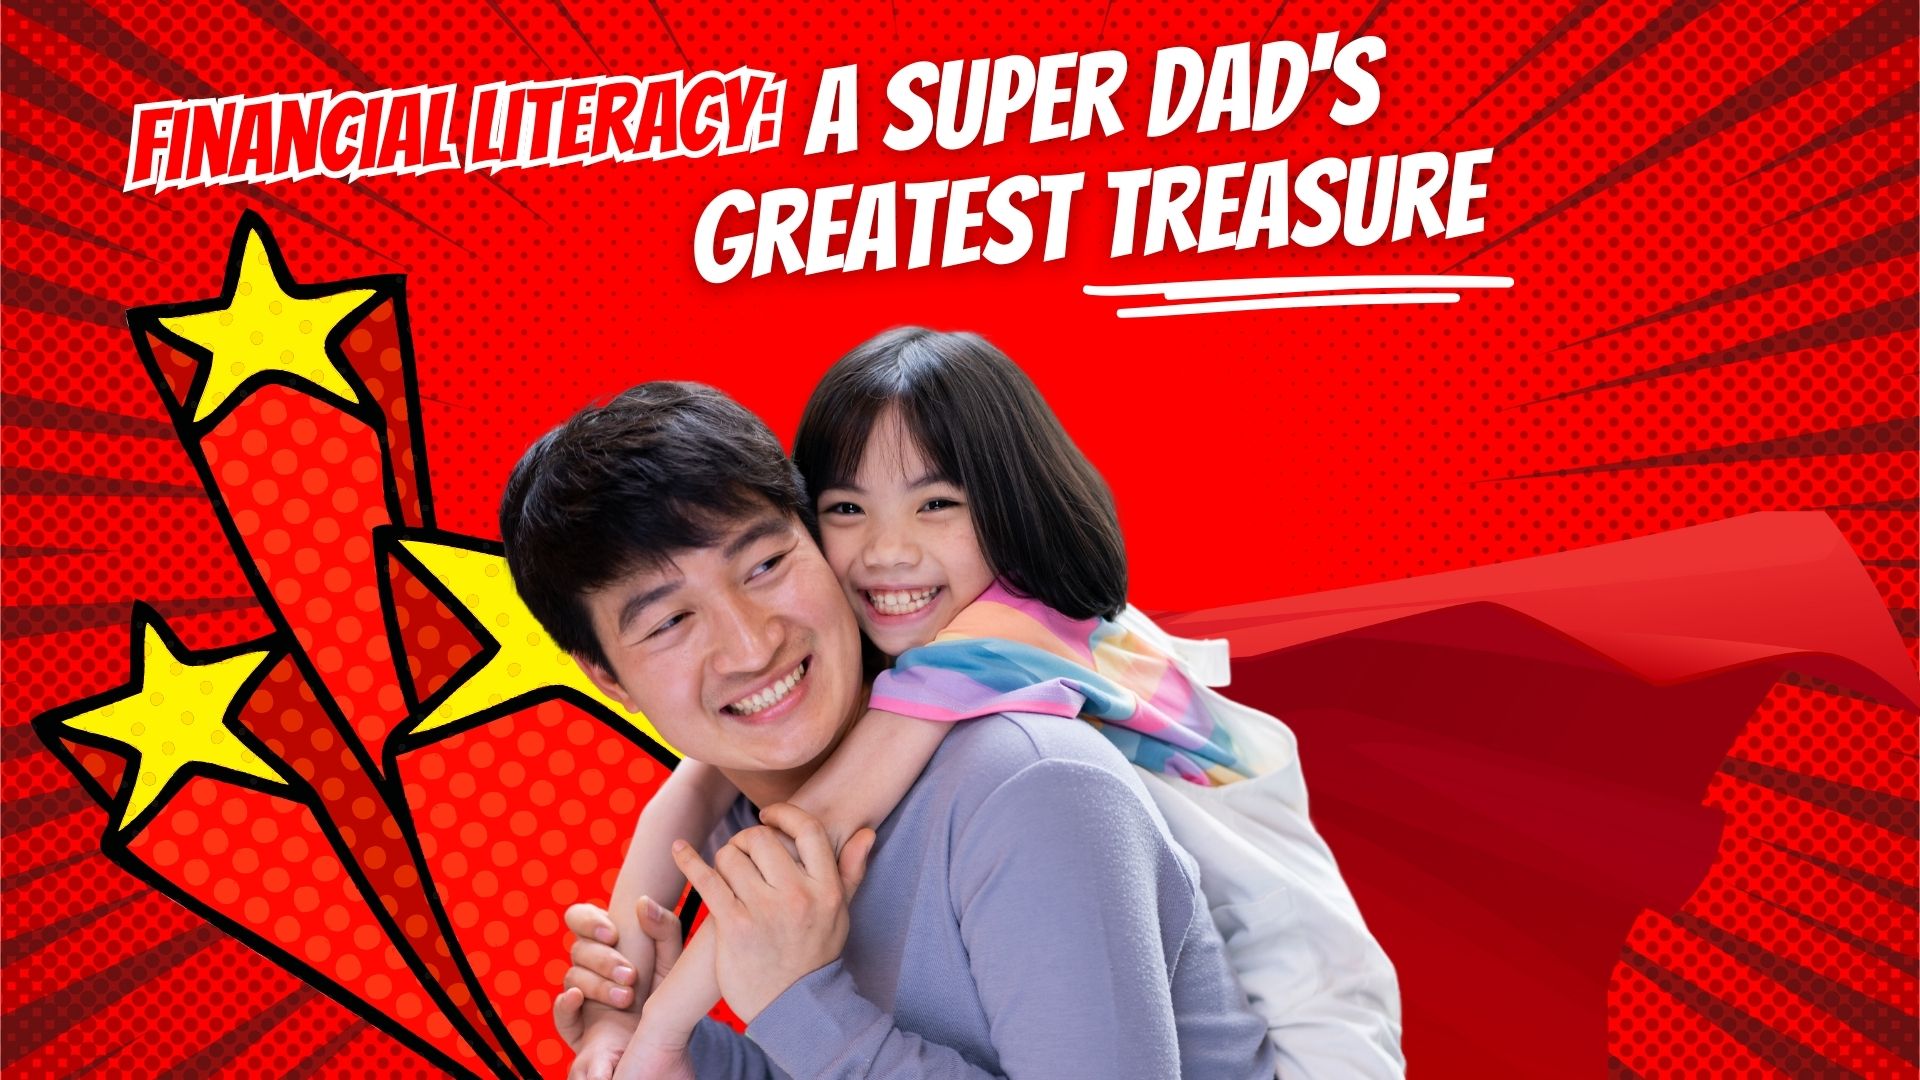 A Super Dad’s Greatest Treasure1